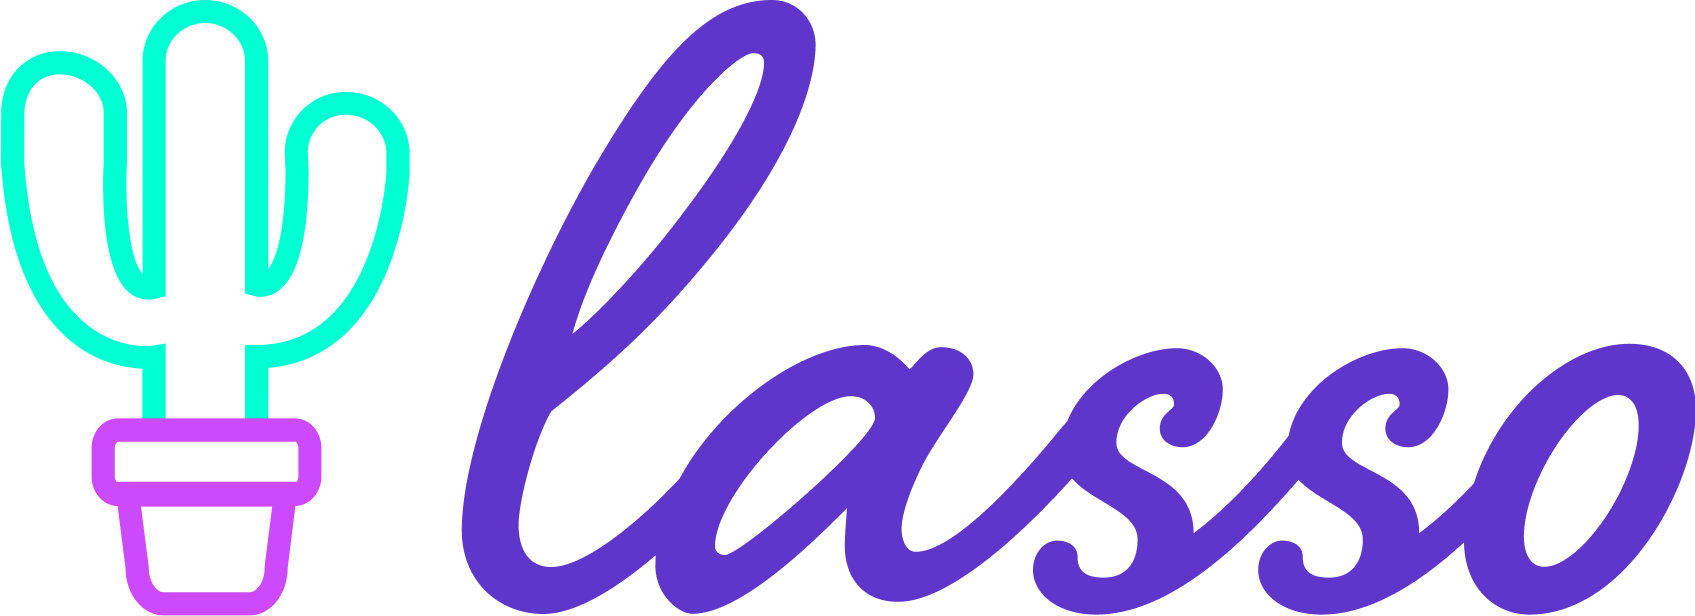 Lasso logo